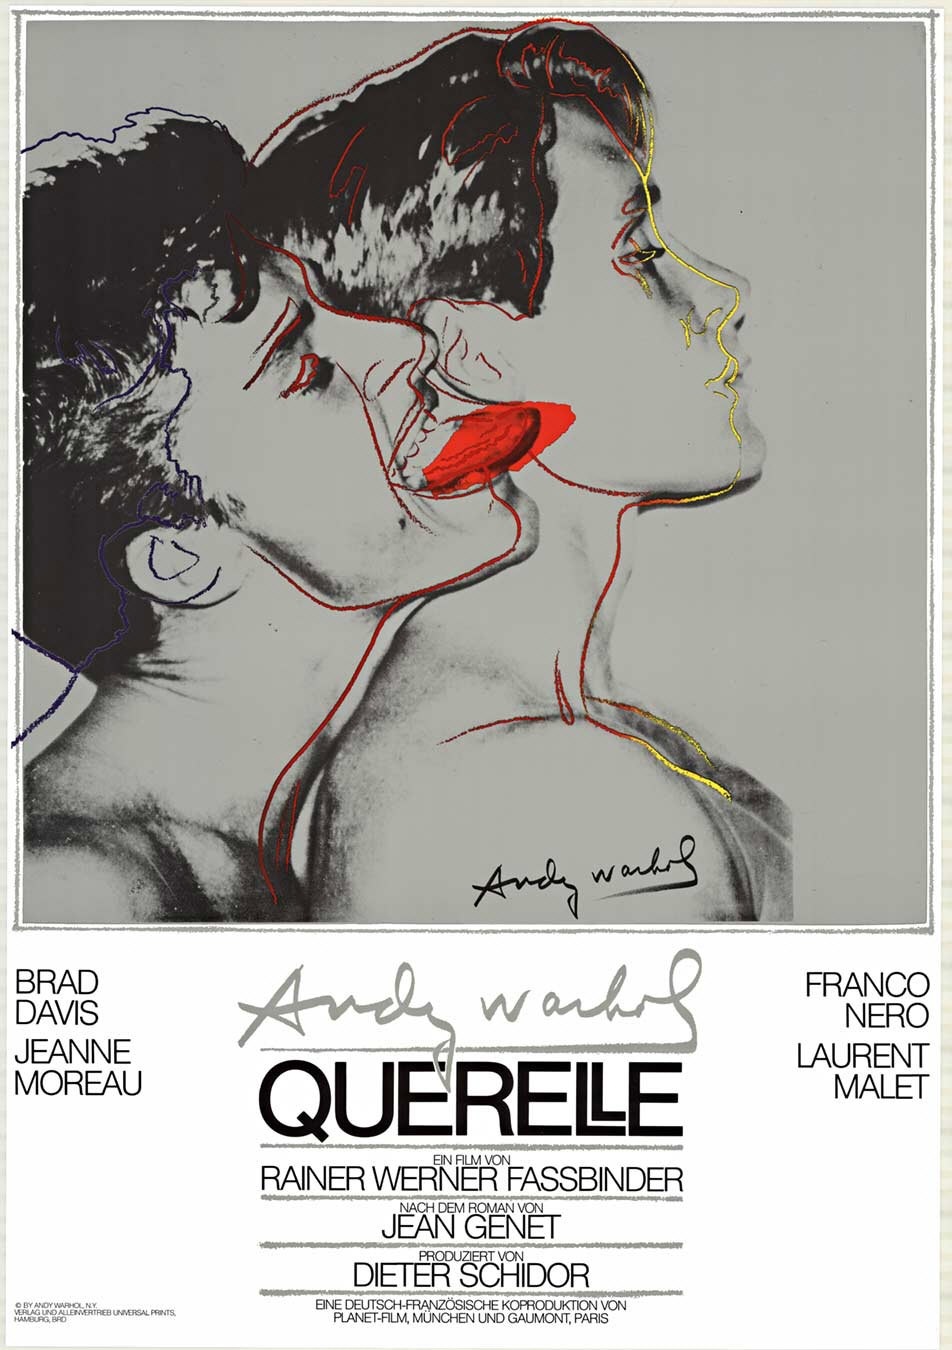 Pôster criado por Andy Warhol para "Querelle" (1982), de Rainer Werner Fassbinder - Divulgação